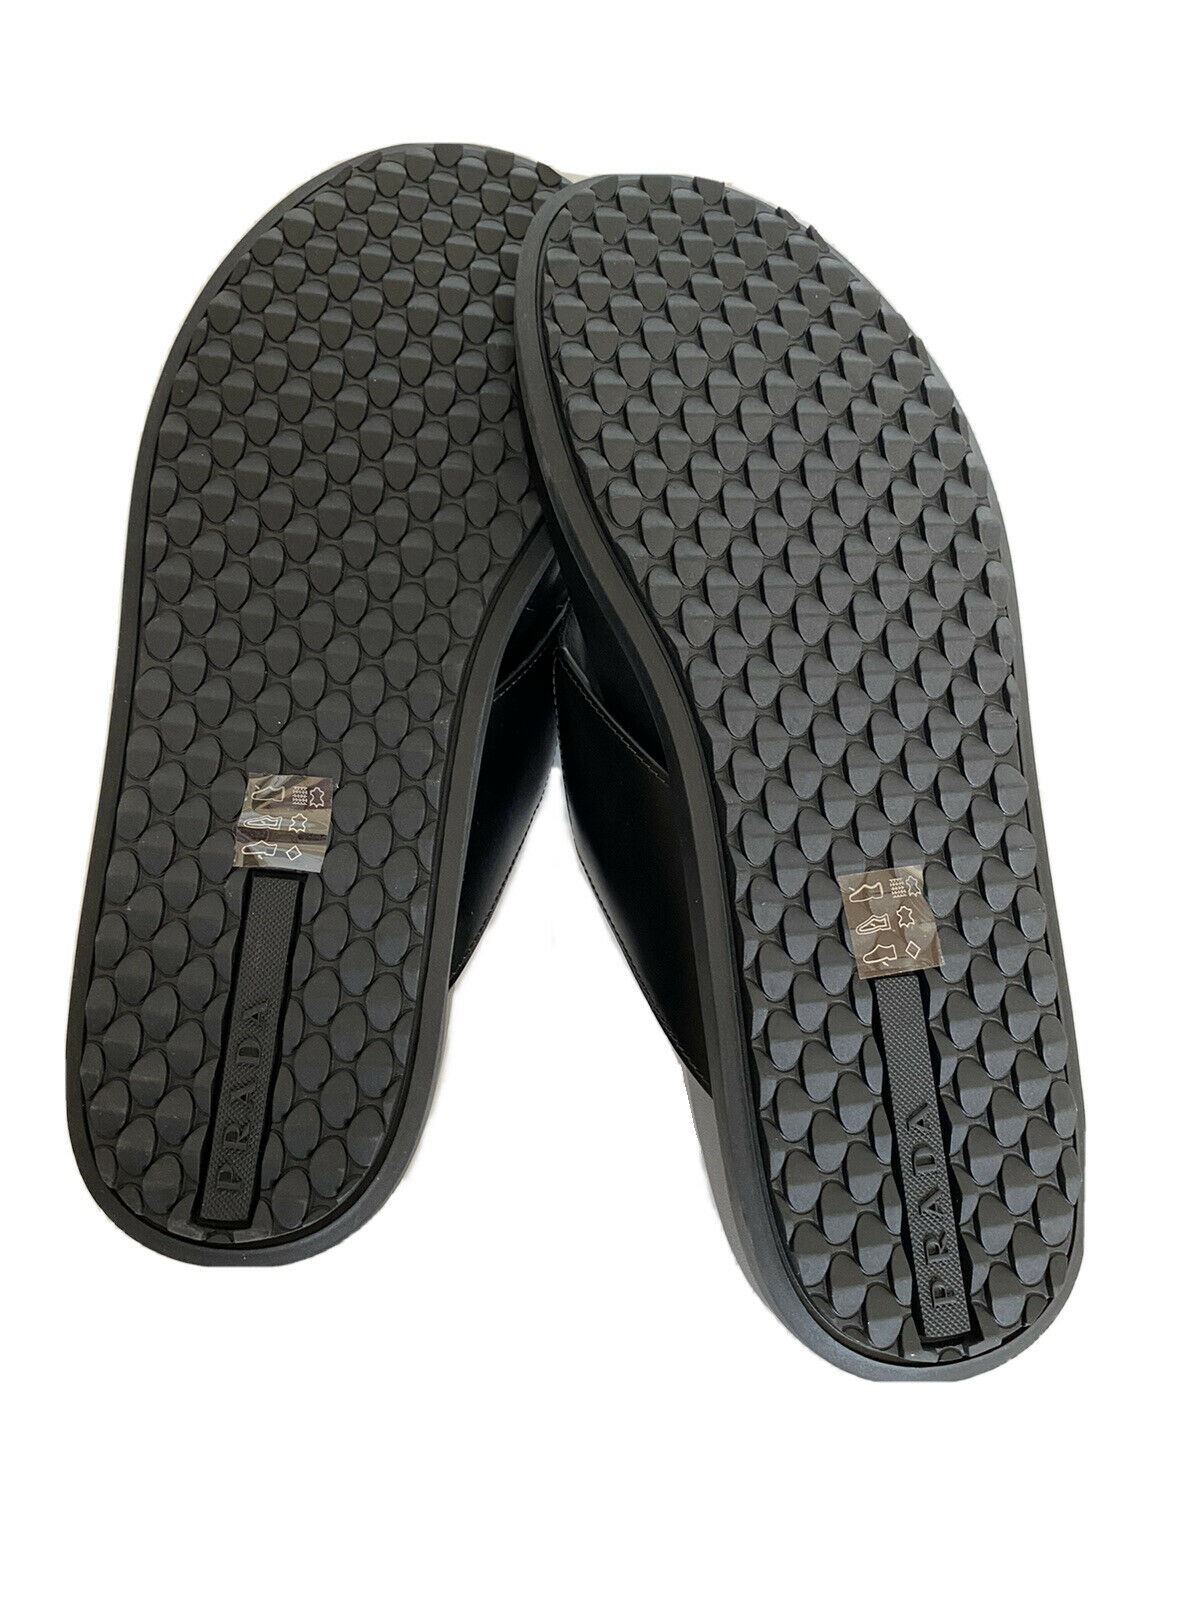 NIB $ 520 Prada Milano Herren Flip Flop Sandalen Schuhe Schwarz 7 US 2Y3030 Italien 